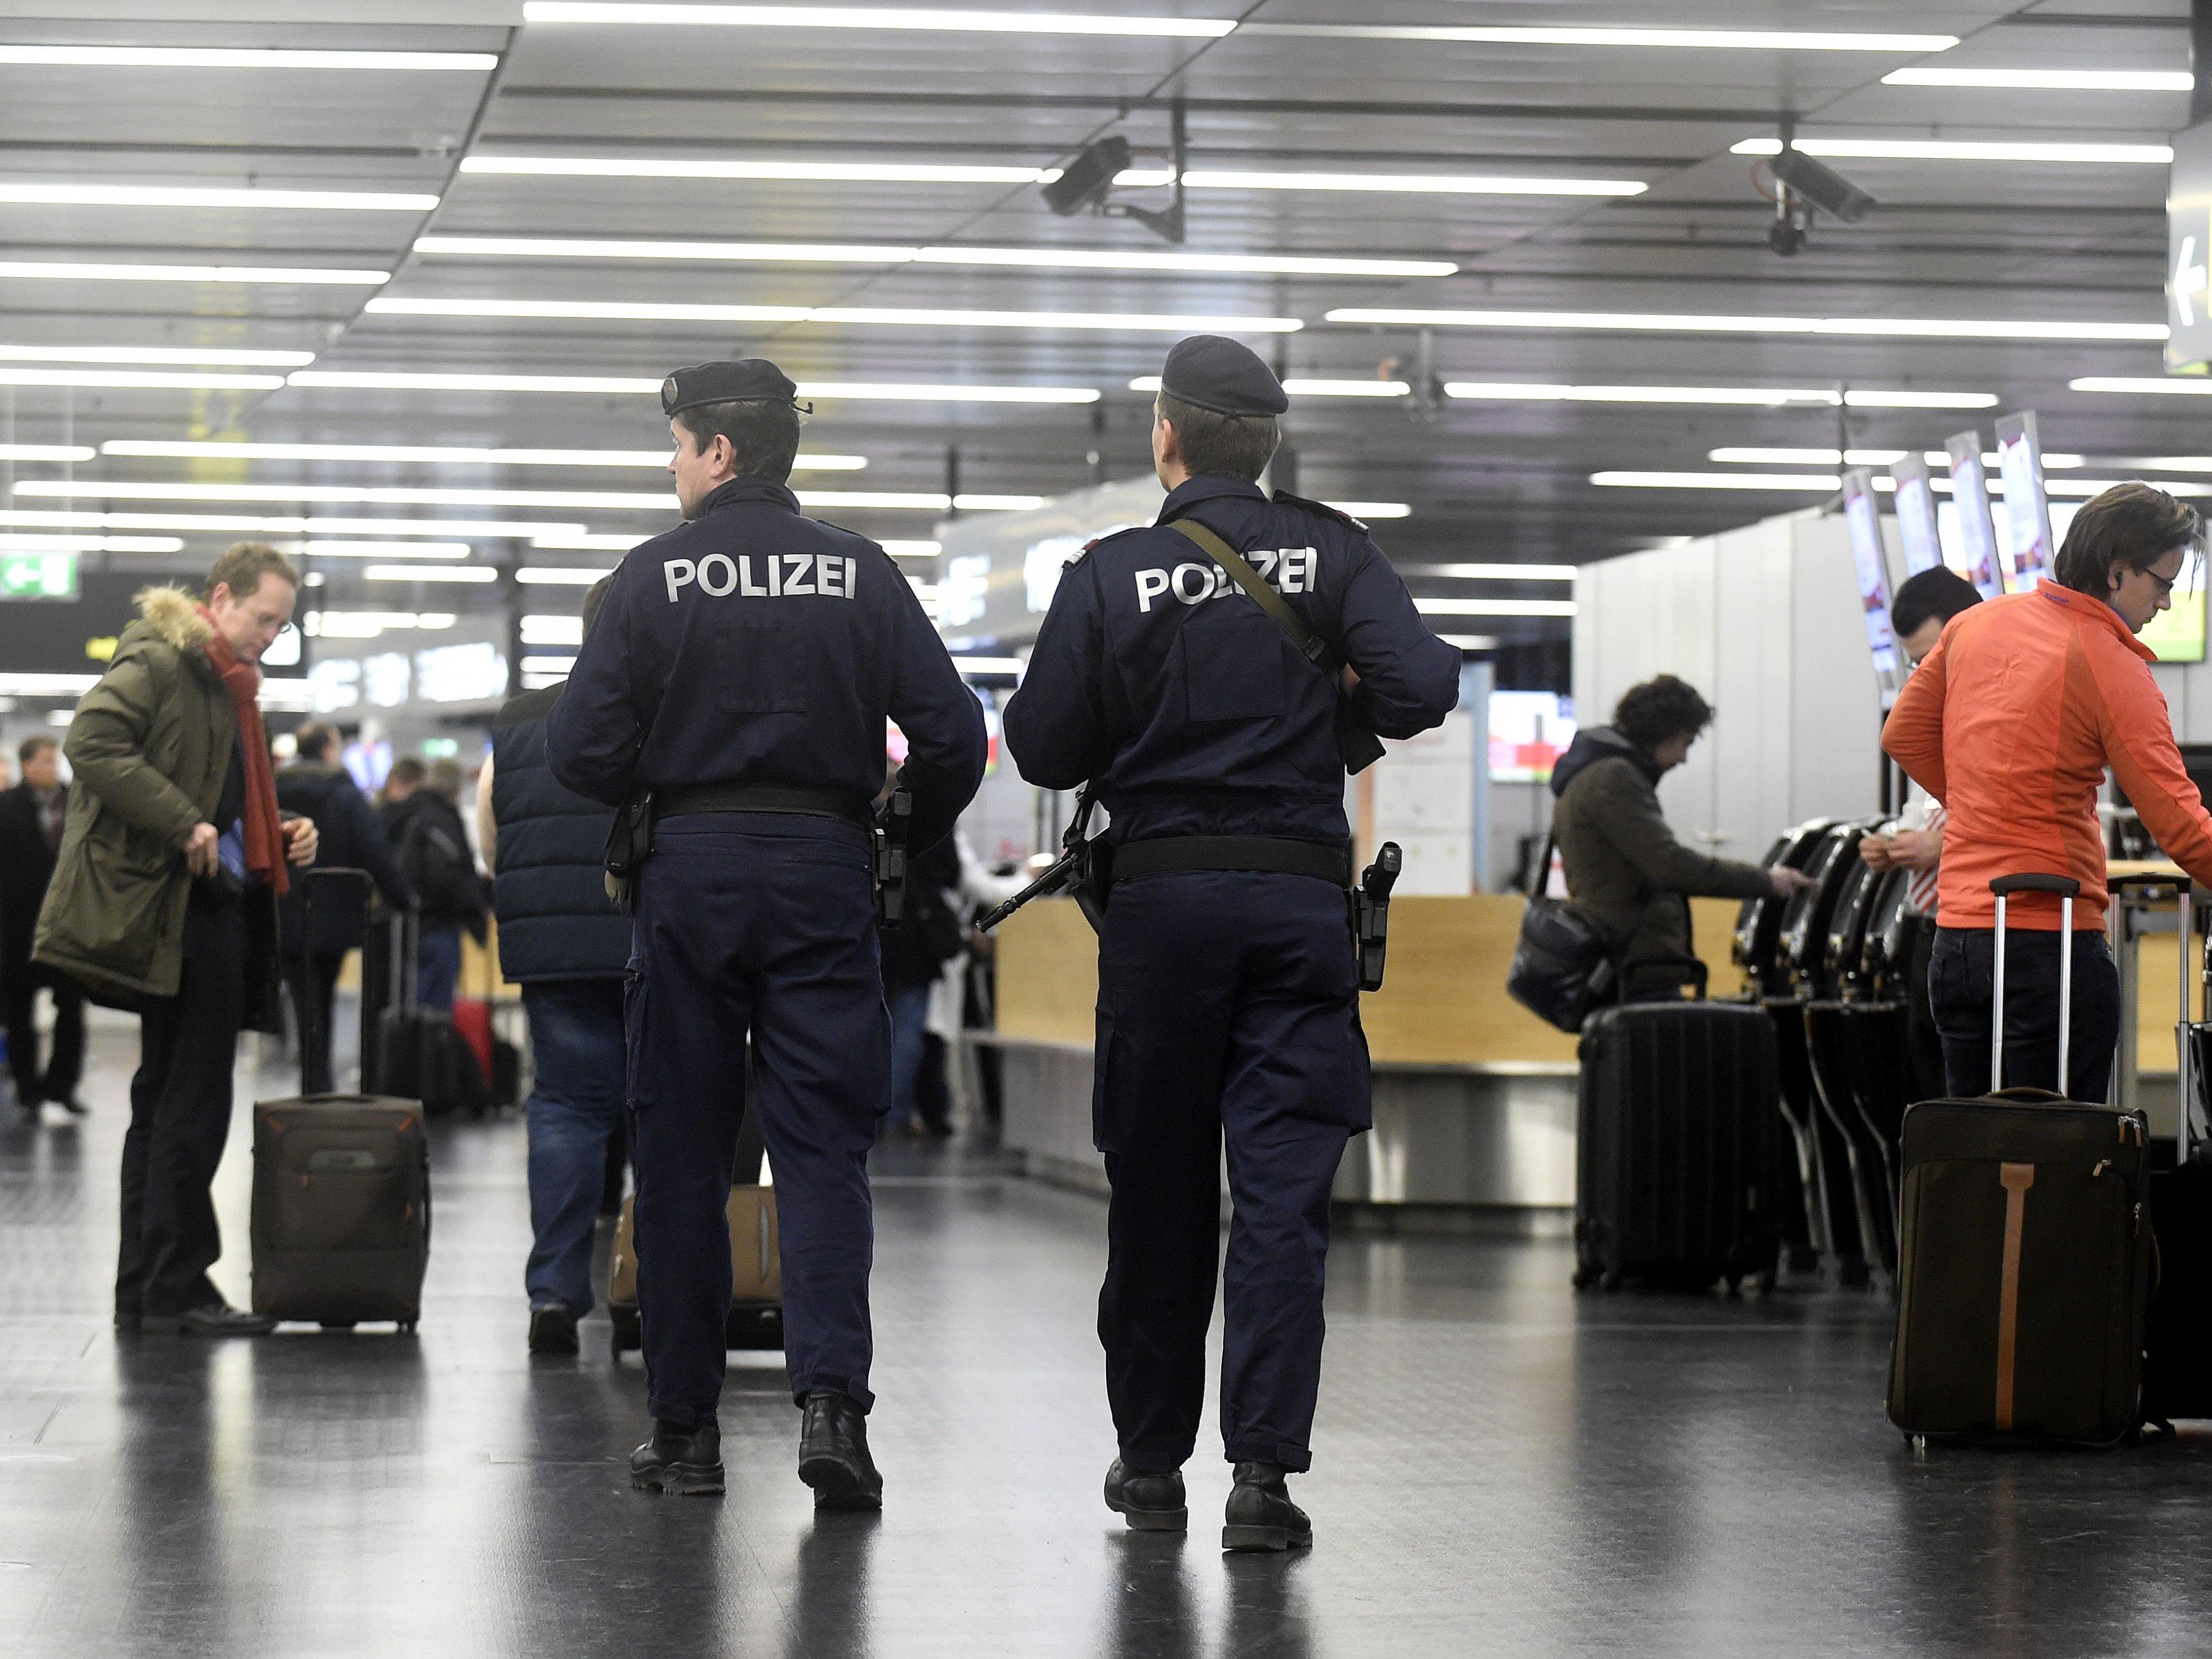 Der deutsche Soldat wurde am Wiener Flughafen festgenommen.